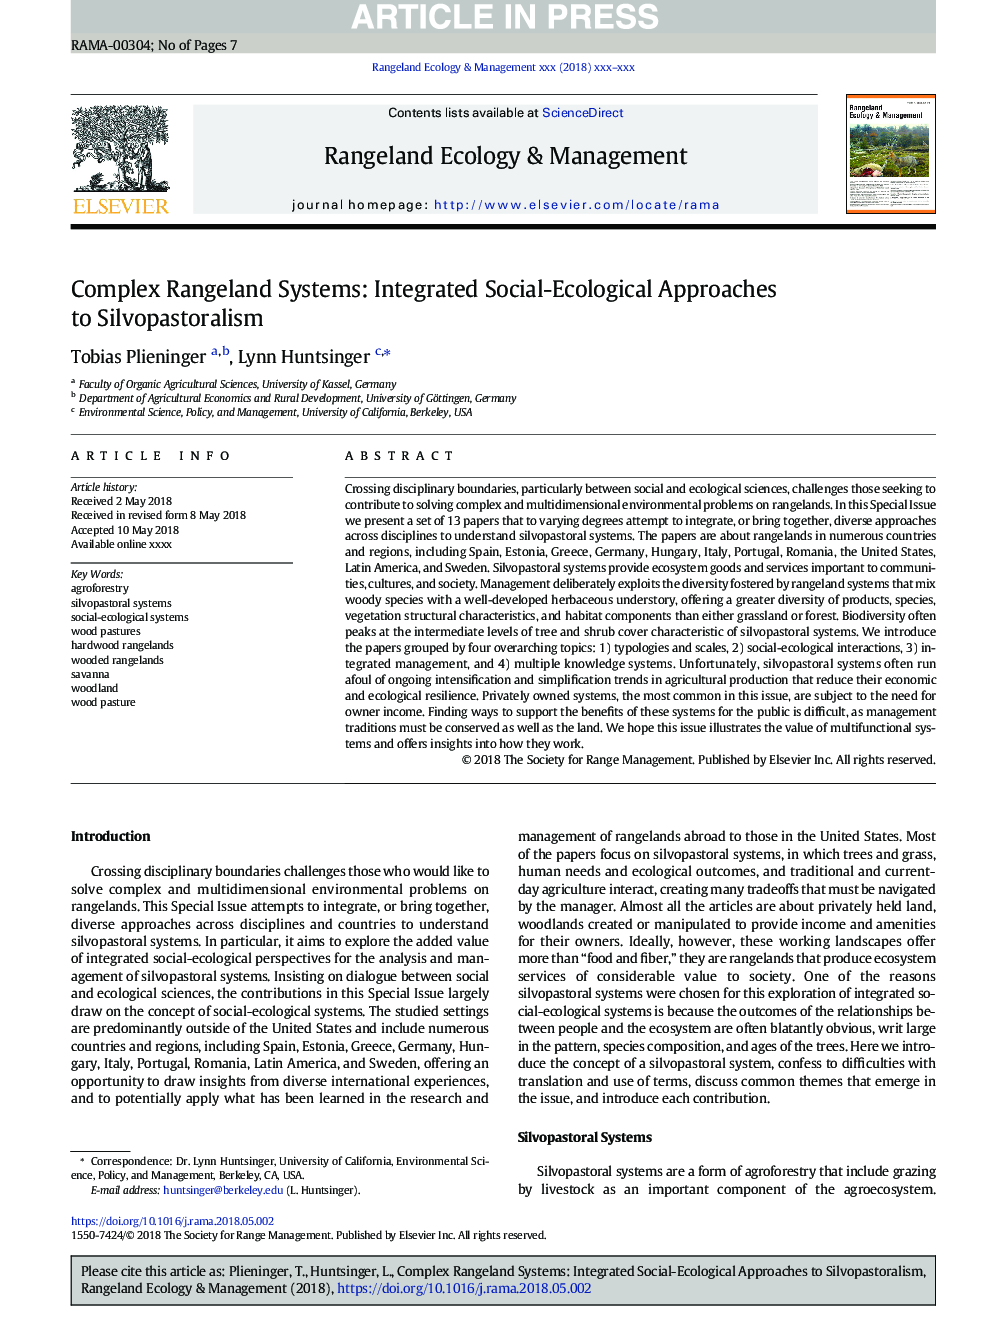 سیستم های مراتع پیچیده: رویکردهای یکپارچه اجتماعی-محیطی برای سیلووپاستورالیستی 